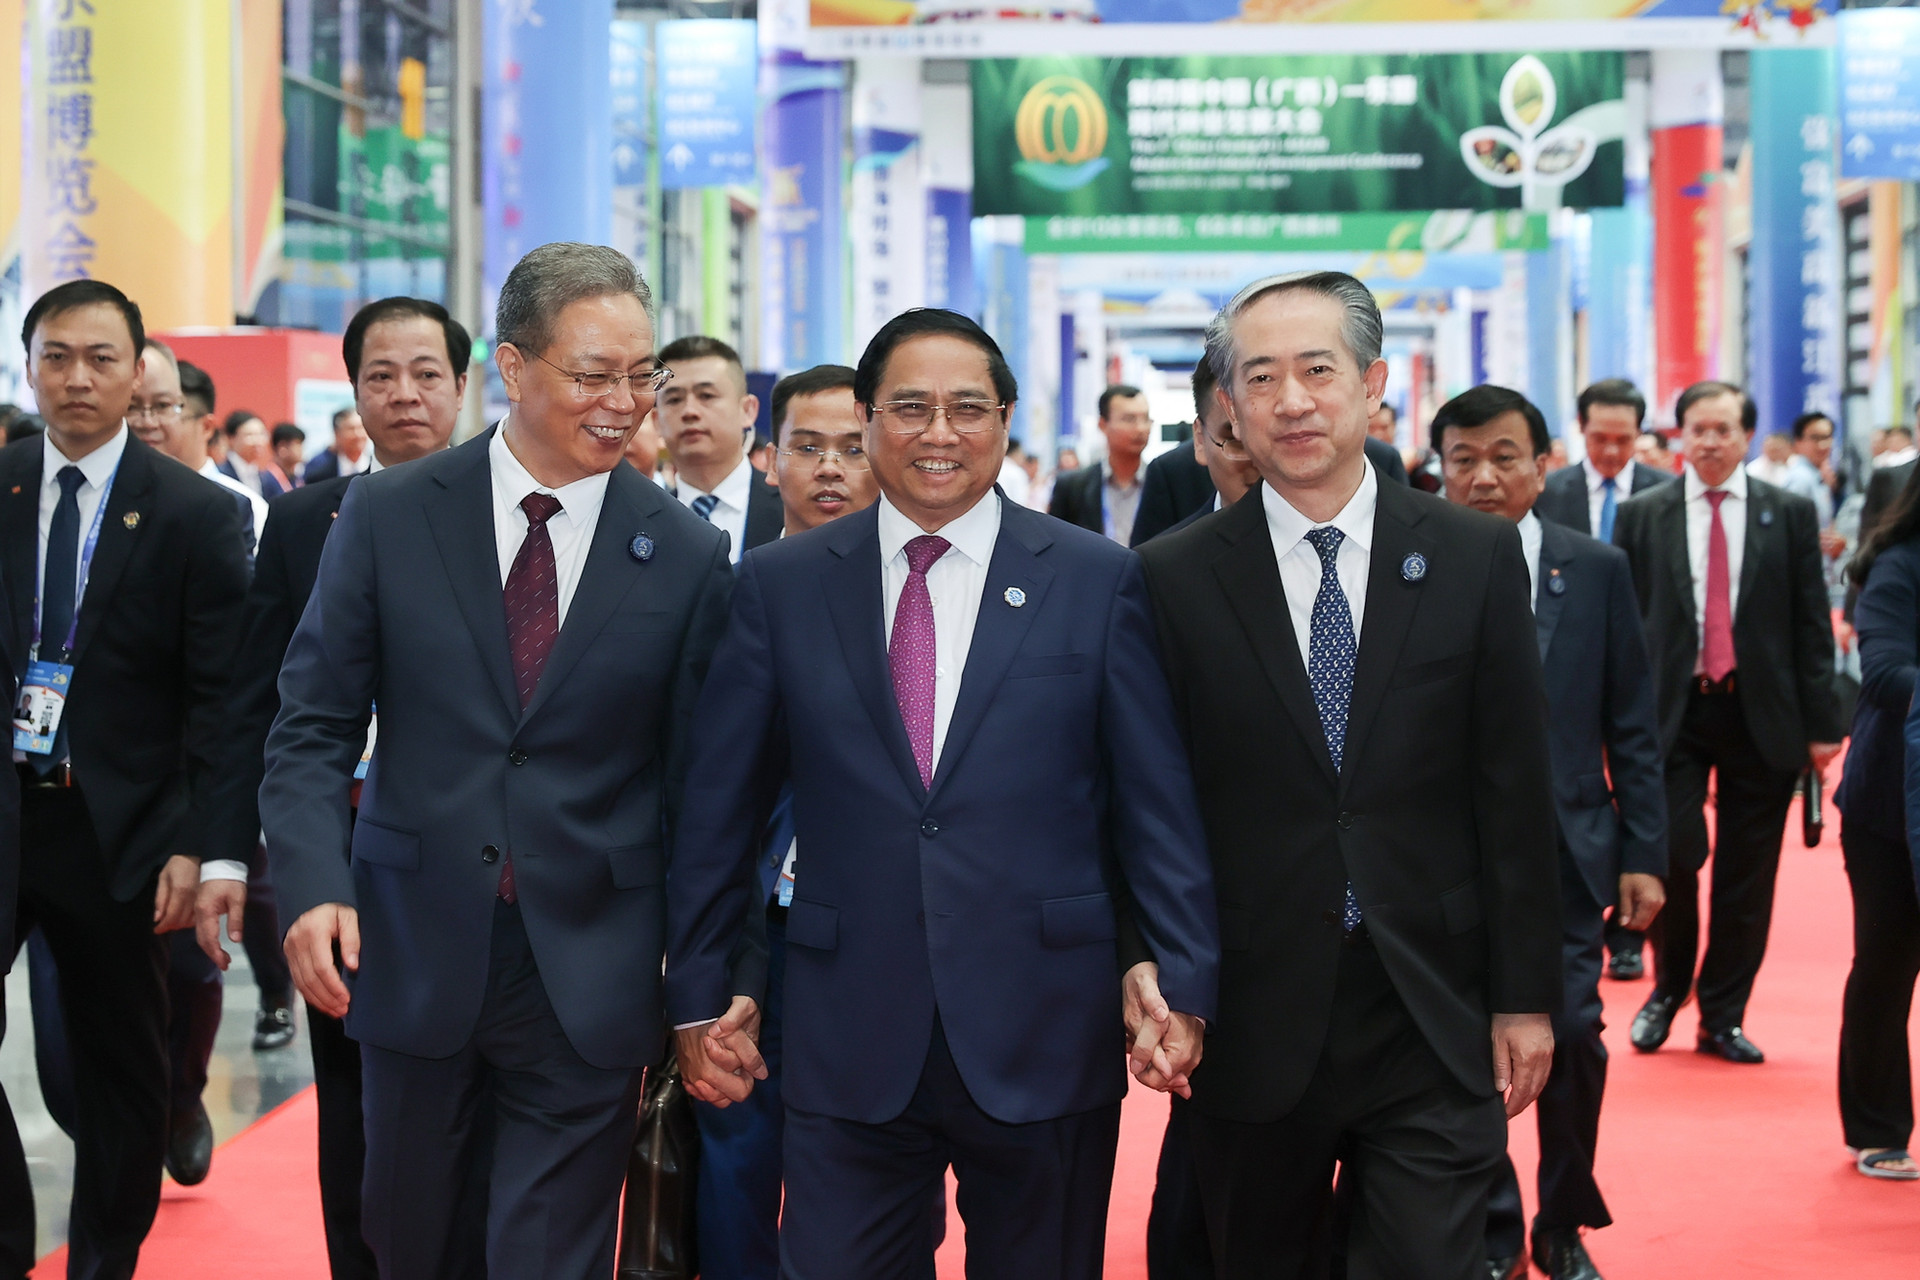 Thủ tướng kết thúc tốt đẹp chuyến công tác tại Trung Quốc với nhiều kết quả nổi bật, quan trọng và thiết thực - Ảnh 7.